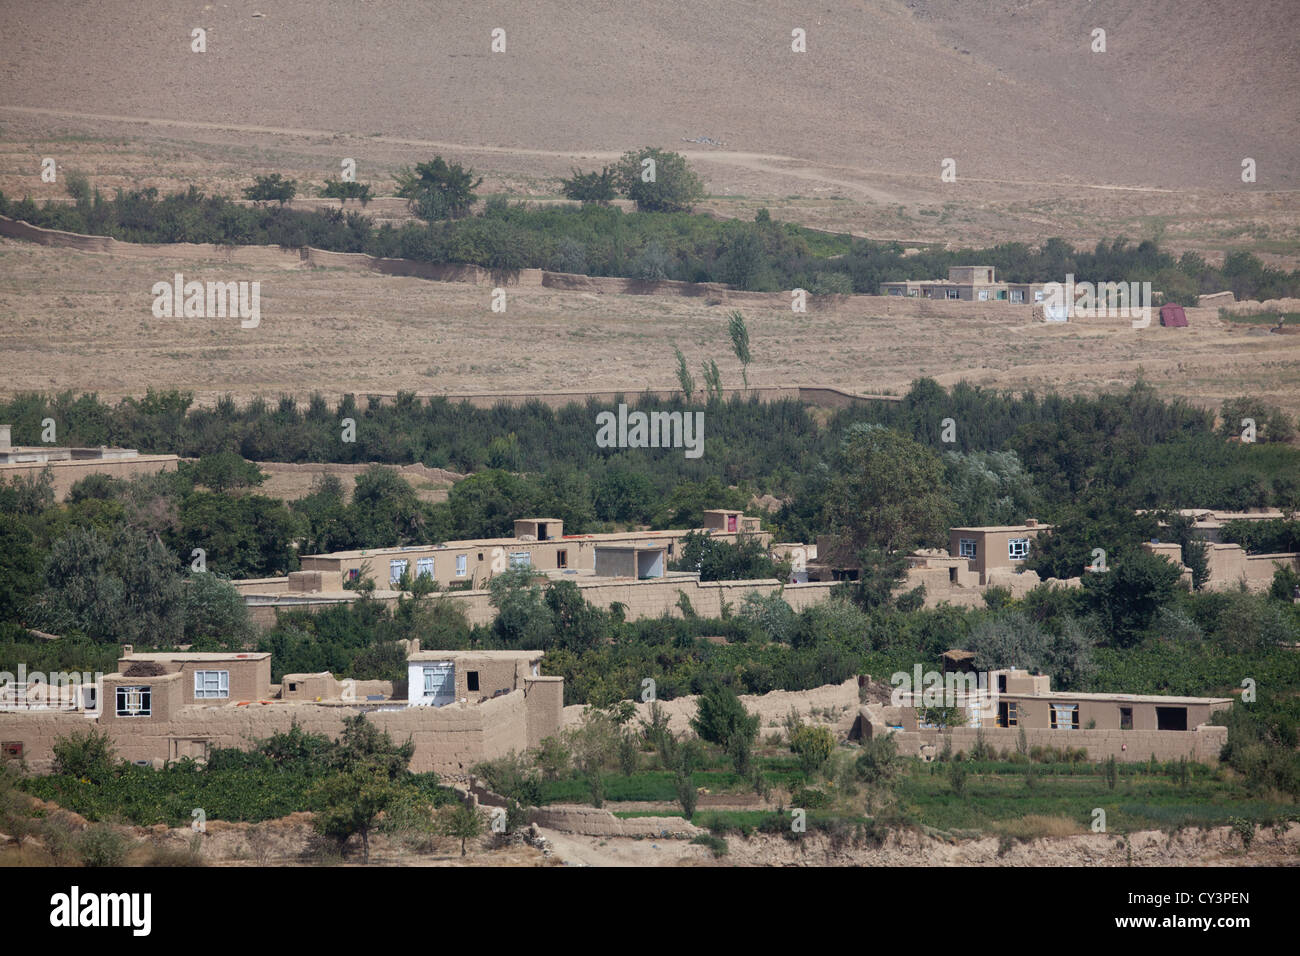 Los distritos de la provincia de Wardak, donde la población es favorable a los talibanes o hesb-islami Foto de stock